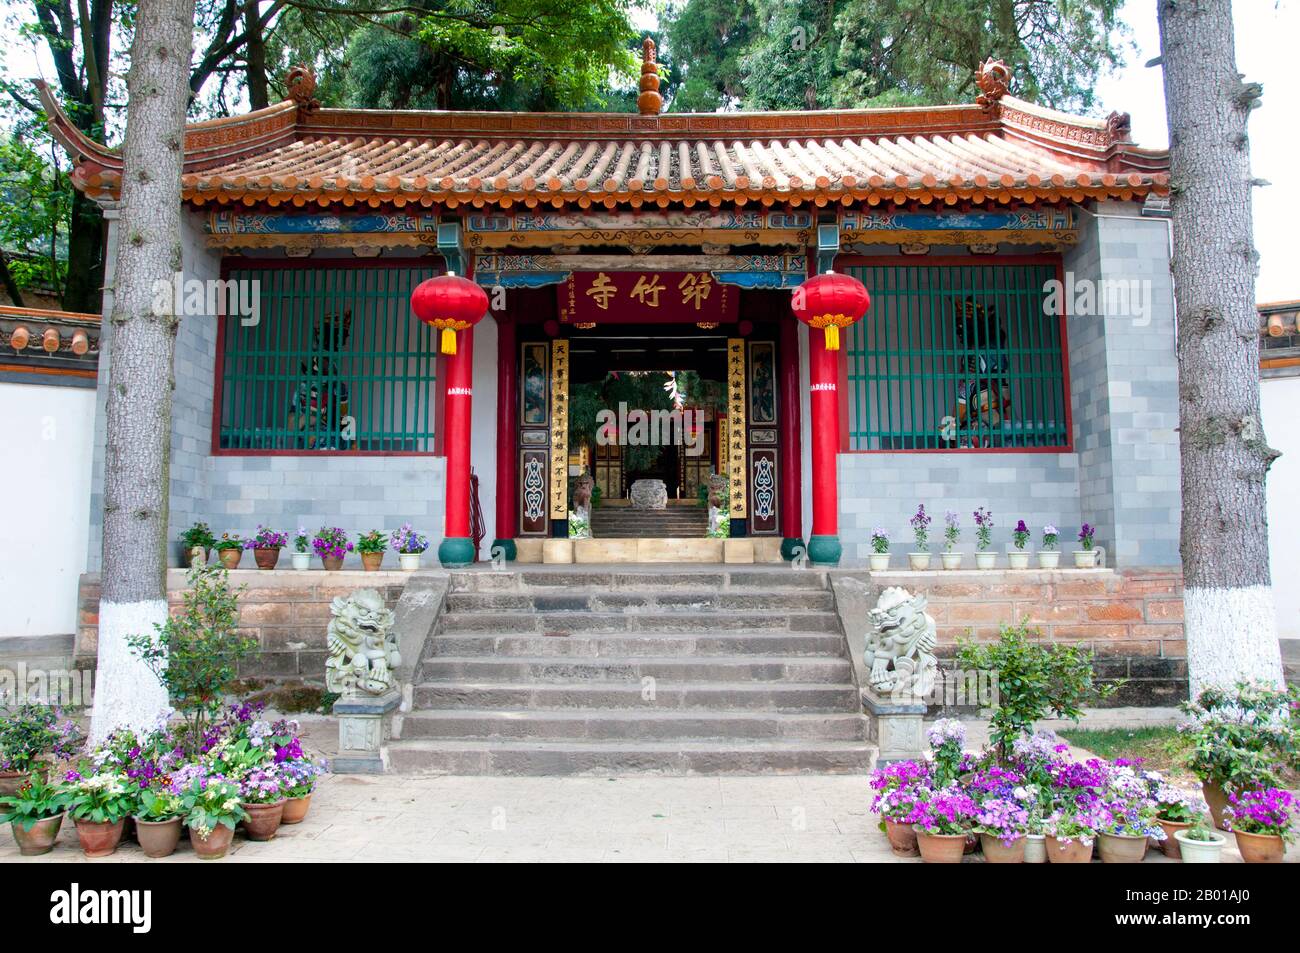 Chine: Entrée à Qiongzhu si (temple de bambou), au nord-ouest de Kunming, province du Yunnan. Qiongzhu si a été construit à l'origine pendant la dynastie Tang (618-907), mais a été correctement établi pendant la dynastie Yuan (1271-1368) comme le premier temple dédié au bouddhisme zen dans le Yunnan. Le temple est célèbre pour ses 500 arhats peints créés sous le règne de l'empereur Qing Guangxu (1875-1909) par le sculpteur Li Guangxiu. Banque D'Images